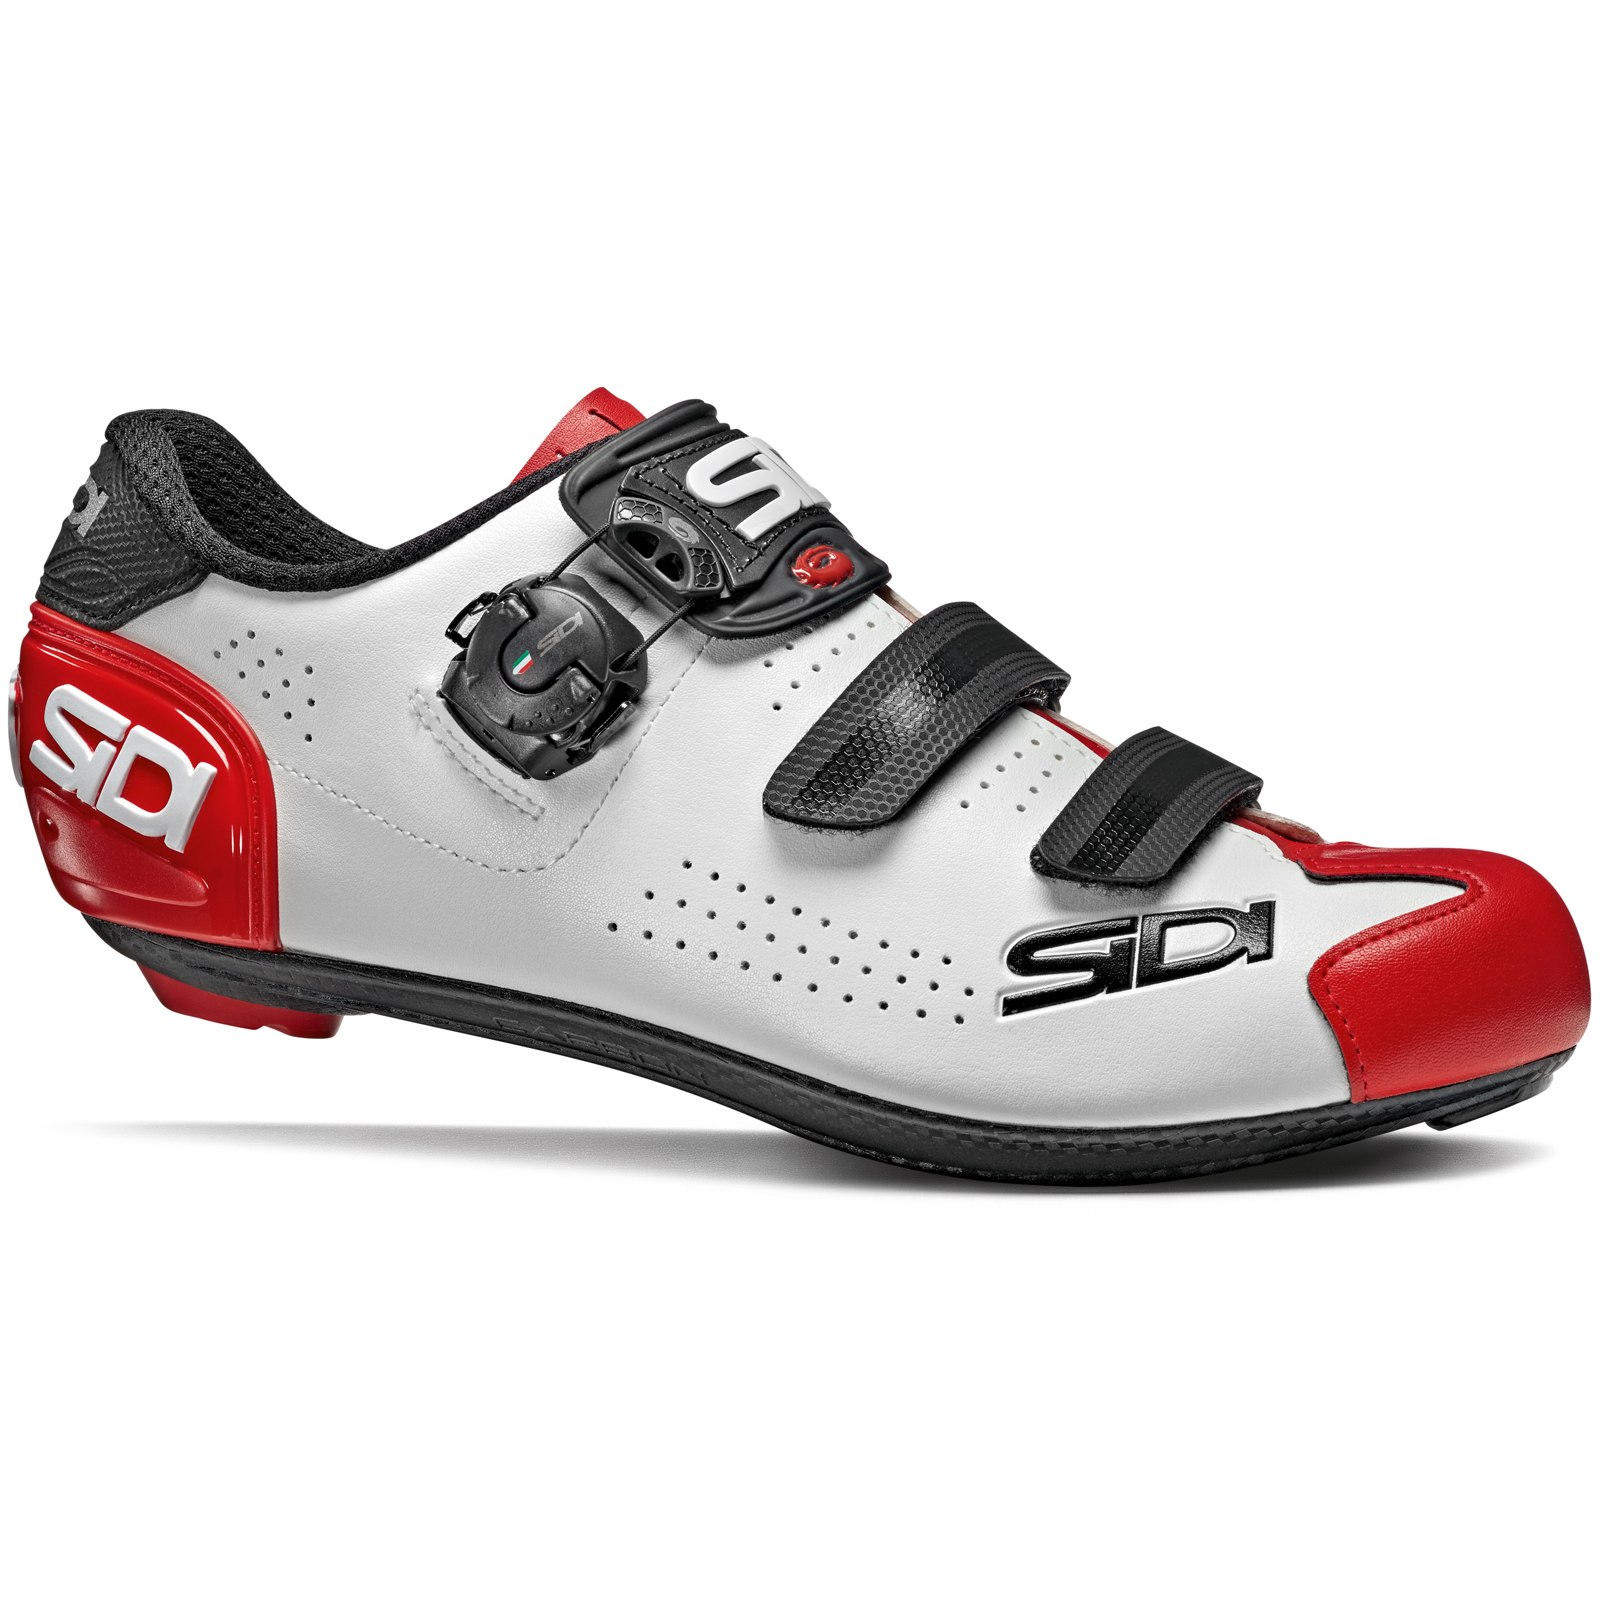 Produktbild von Sidi Alba 2 Rennradschuhe - weiß/schwarz/rot